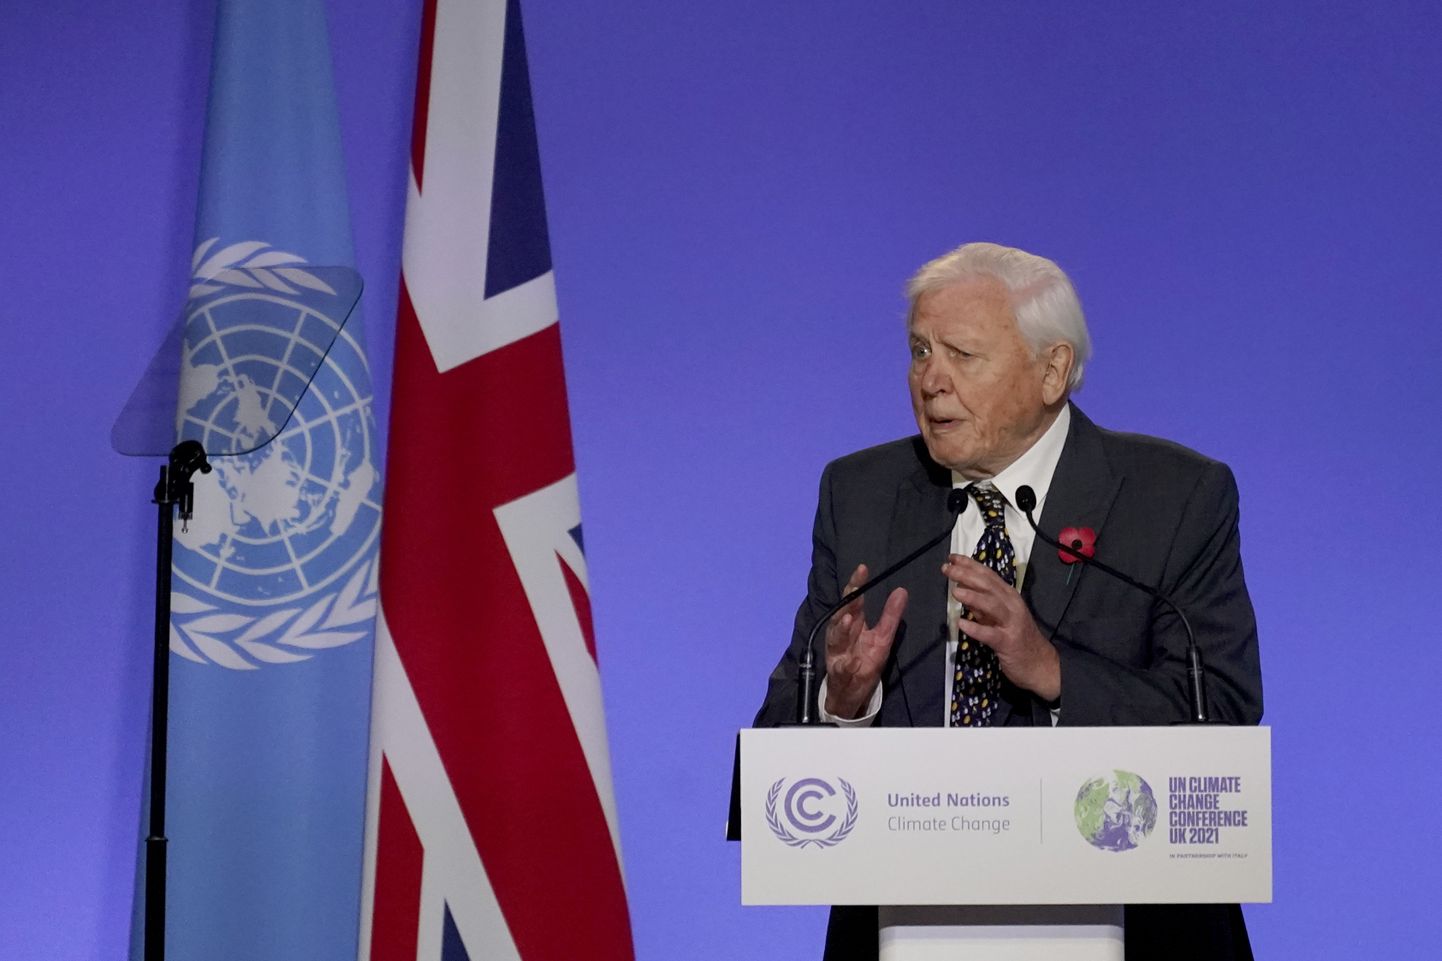 Sir David Attenborough COP26 kliimakonverentsil maailma liidreid kliima ja elurikkuse probleemidega tegutsema utsitamas.